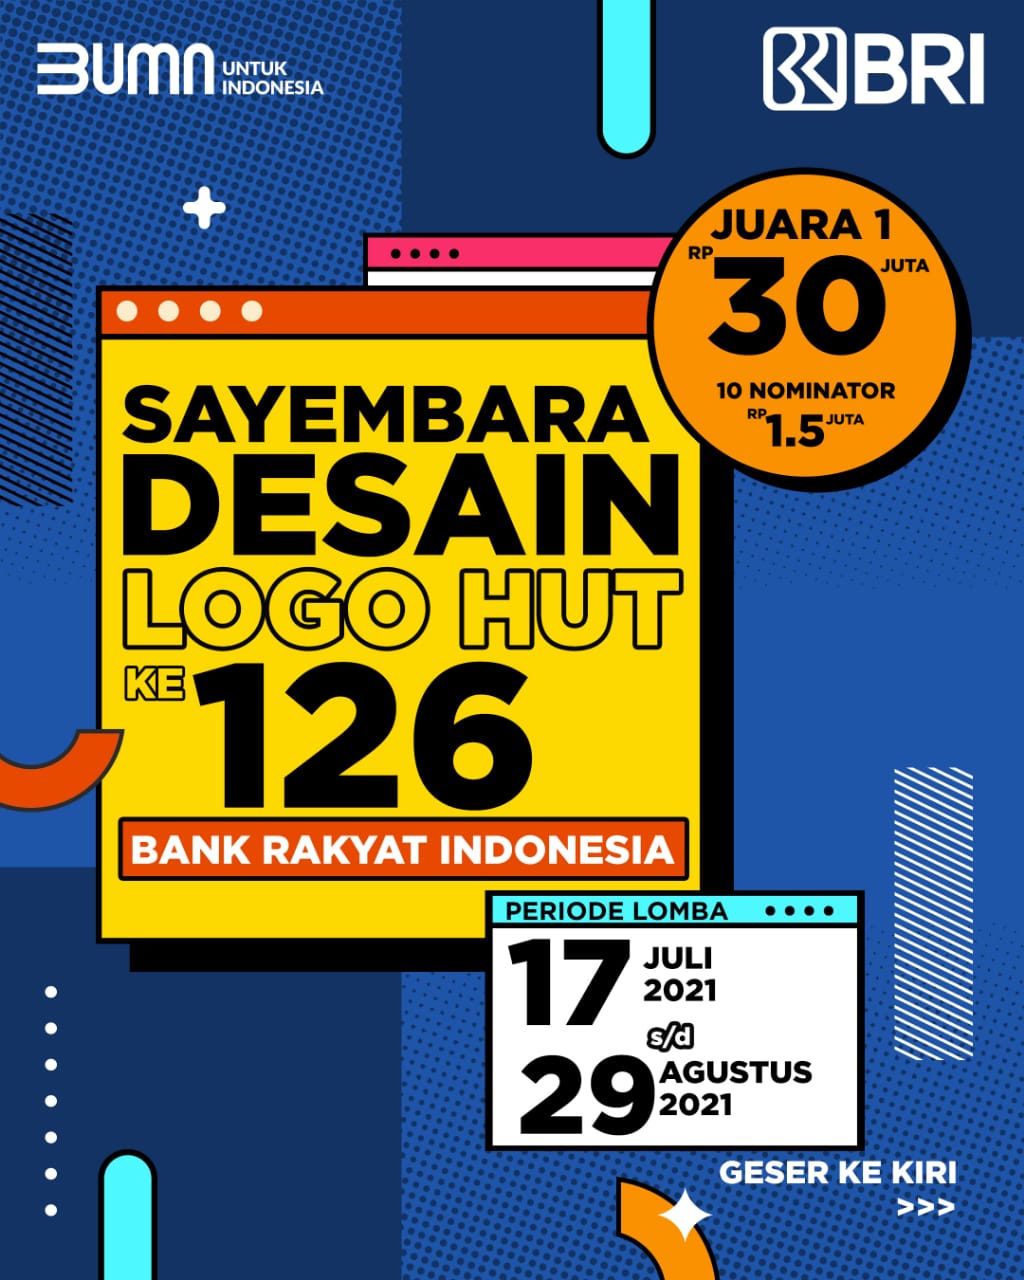 Yukkk Ikutan Sayembara Desain Logo HUT BRI ke-126, Total Hadiah Puluhan Juta